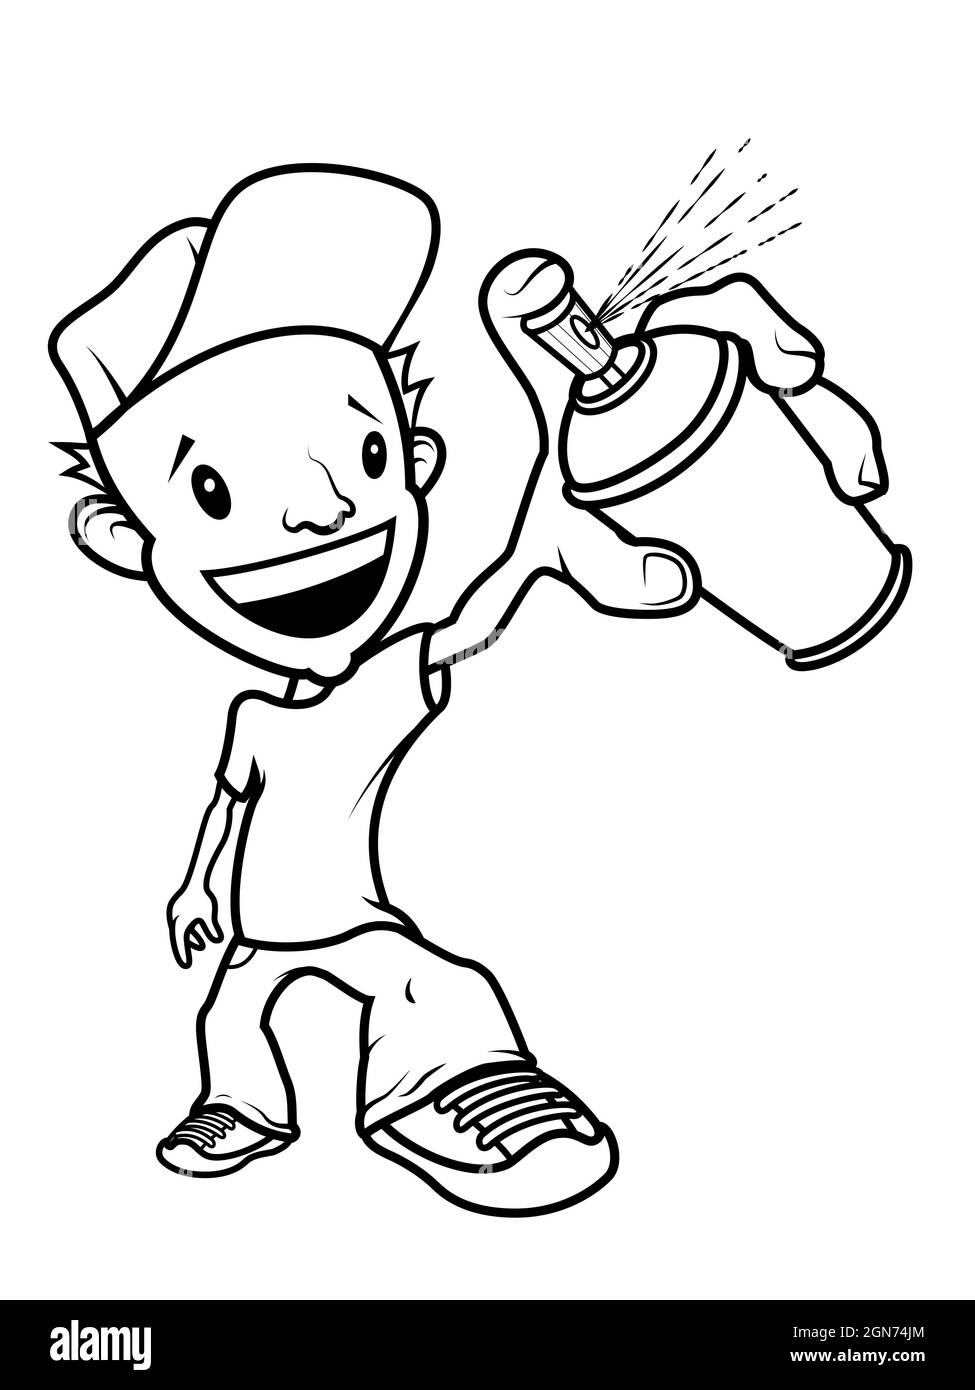 Personaggio scrittore di graffiti cartoon sorridente con una vernice spray sulla mano. Linea nera su sfondo bianco. Illustrazione Vettoriale